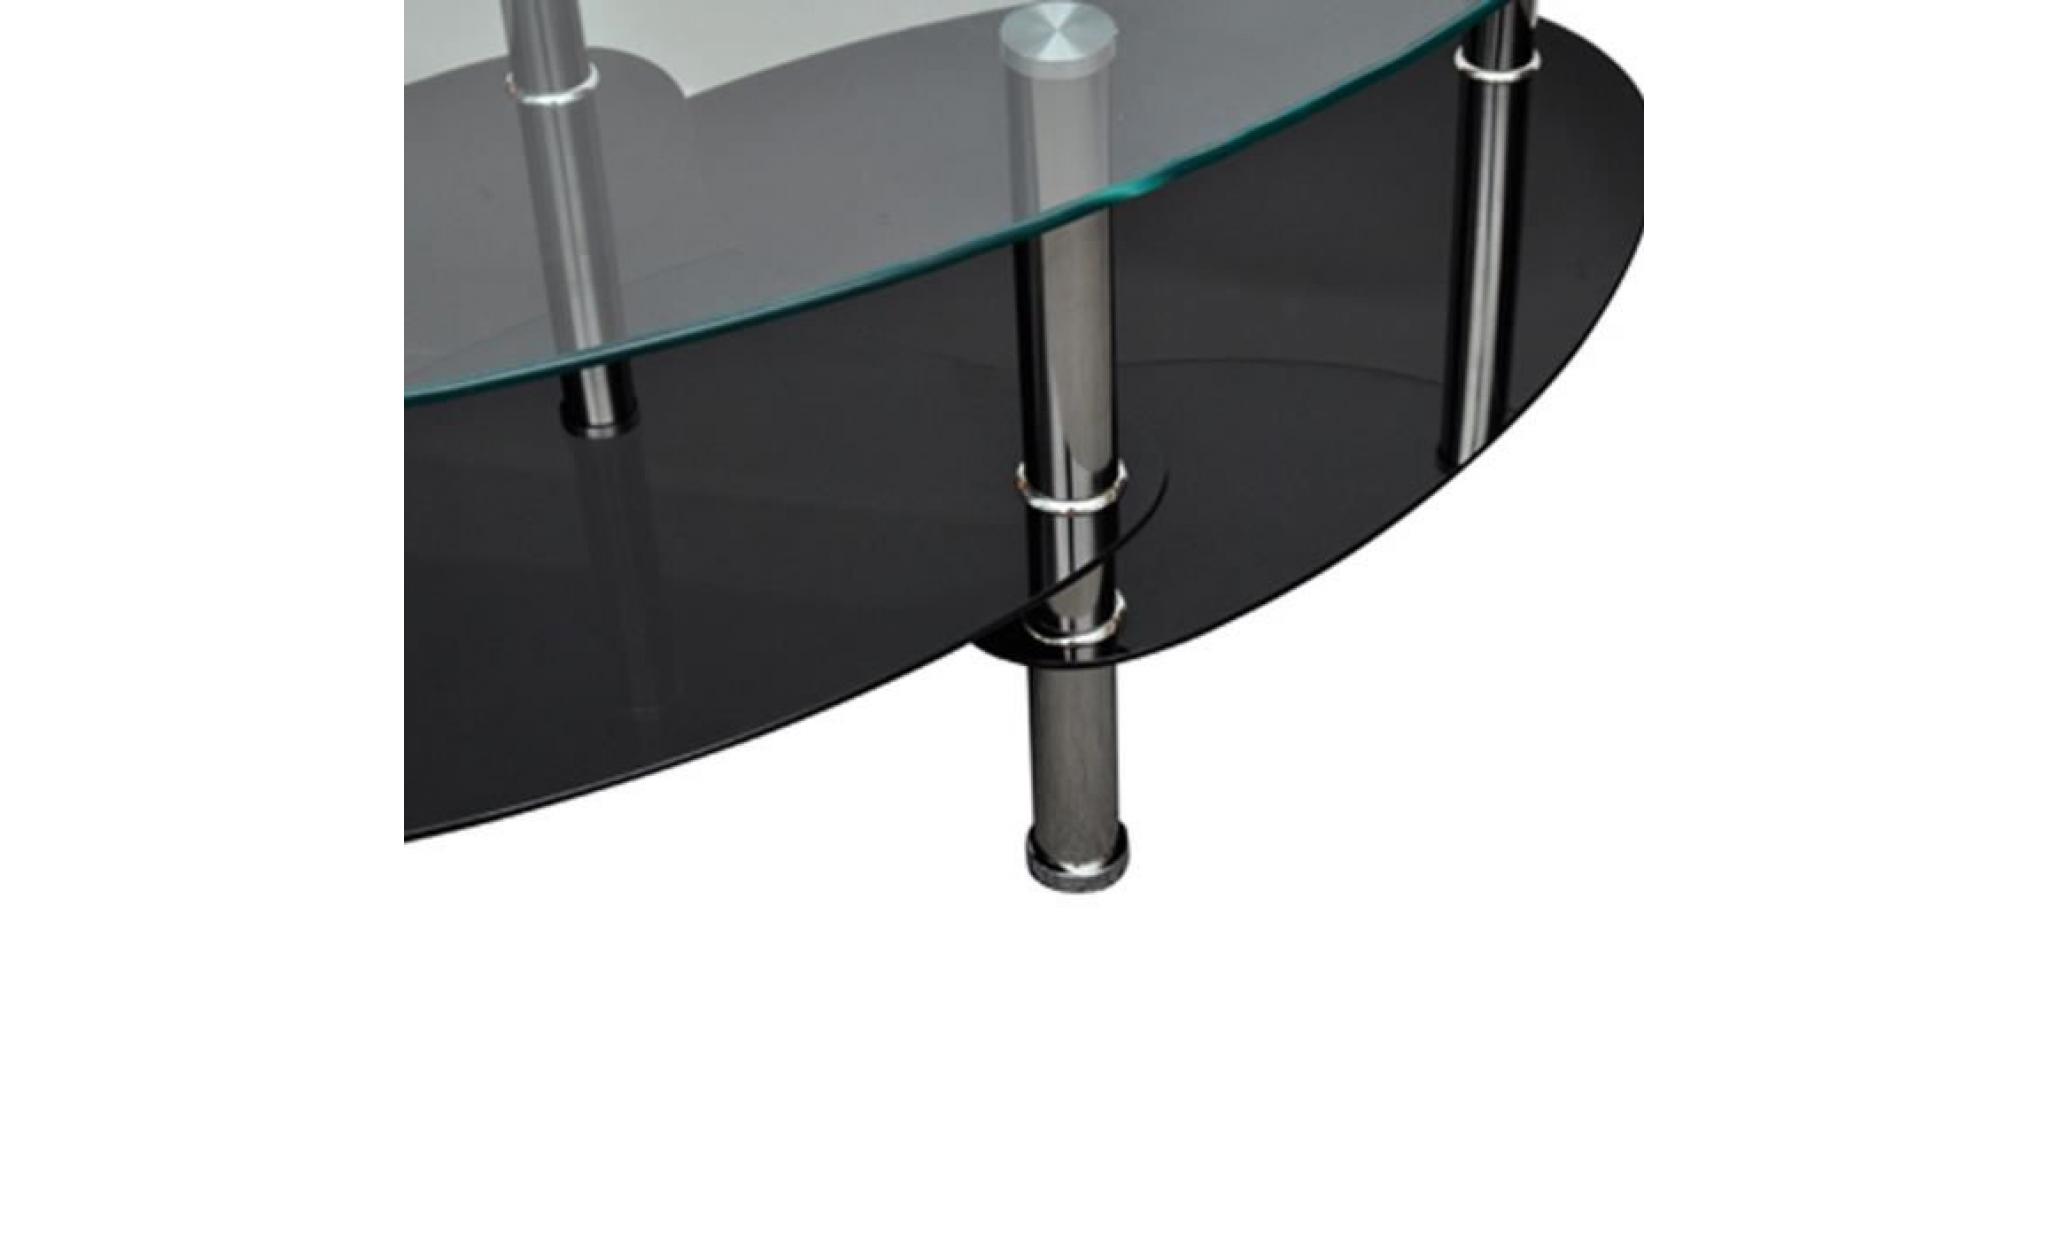 table à café / table basse à 3 couches de salon chambre ou bureau en verre trempé + cadre en métal noire barcelone 90 x 45 x 43 cm pas cher